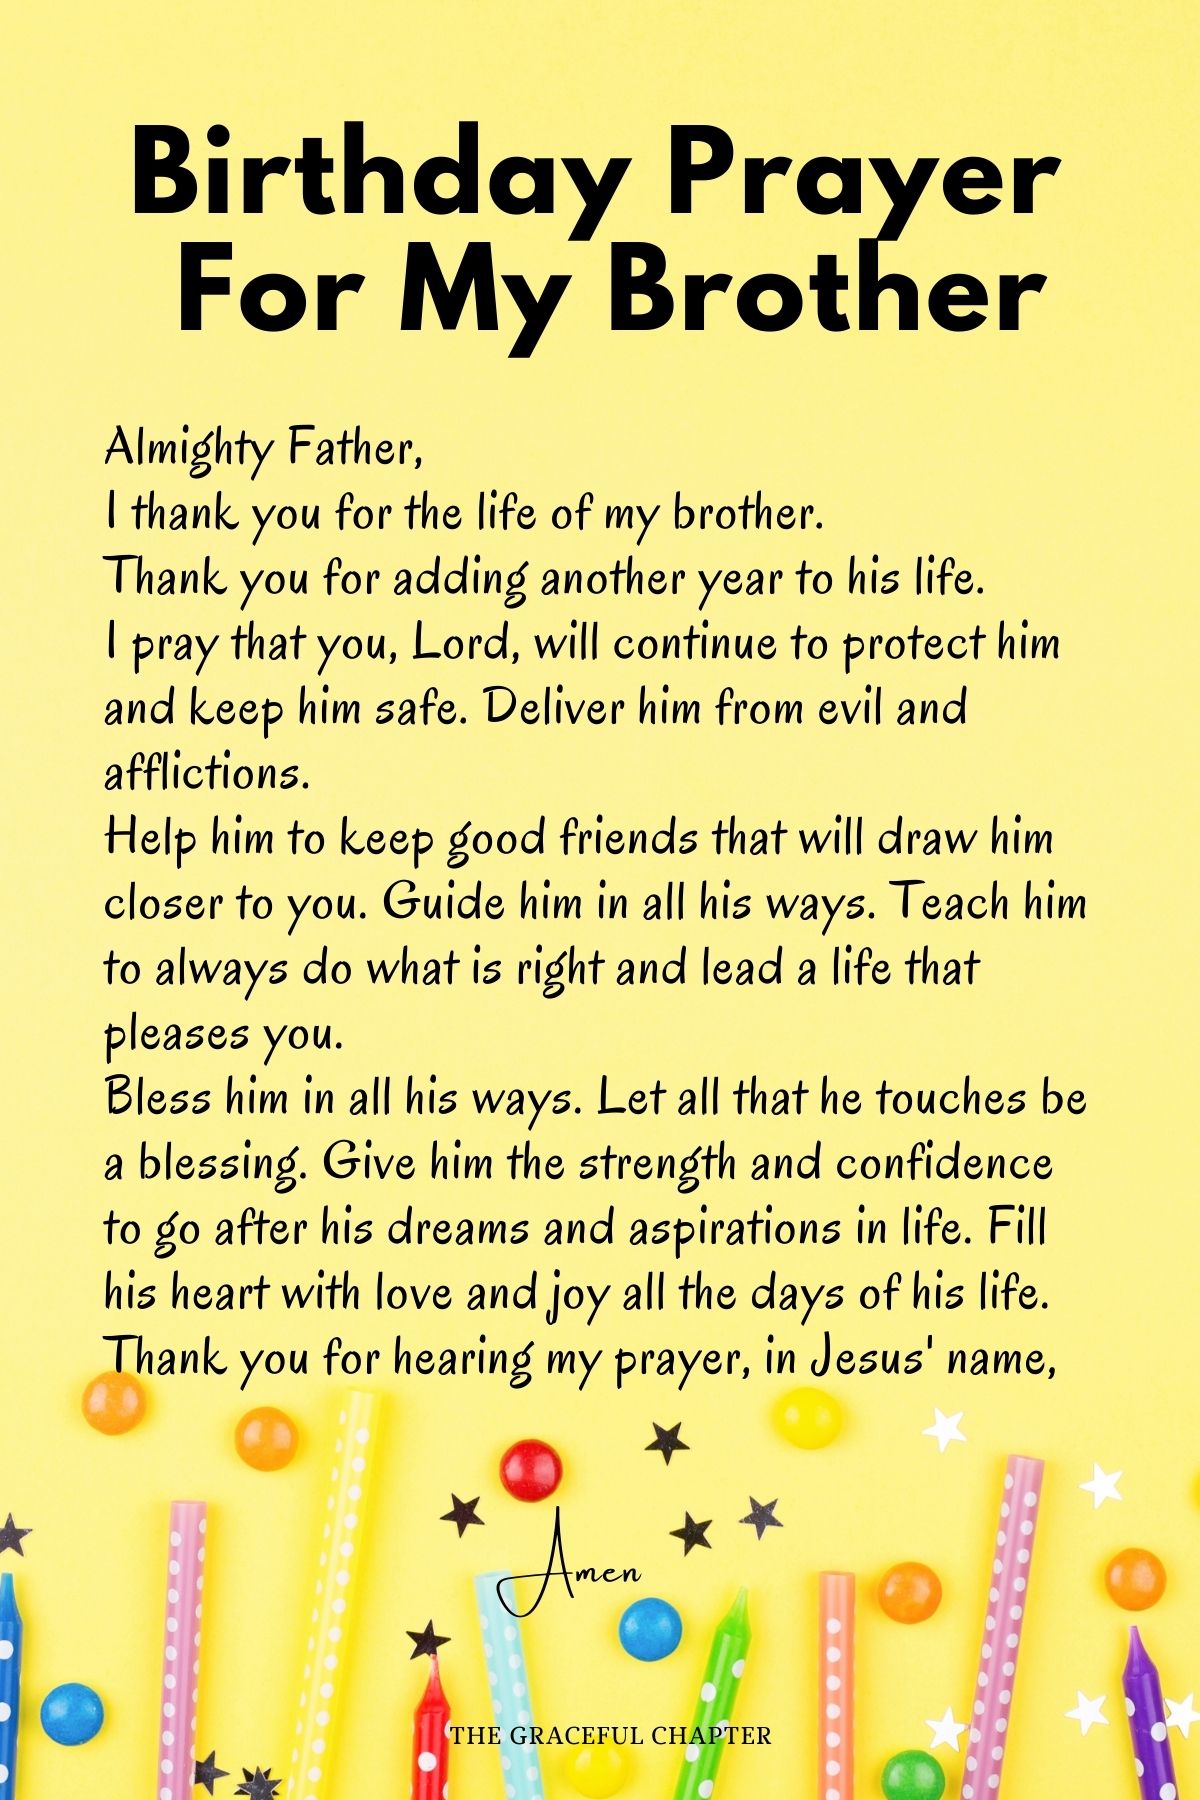 Birthday Prayer for my brother